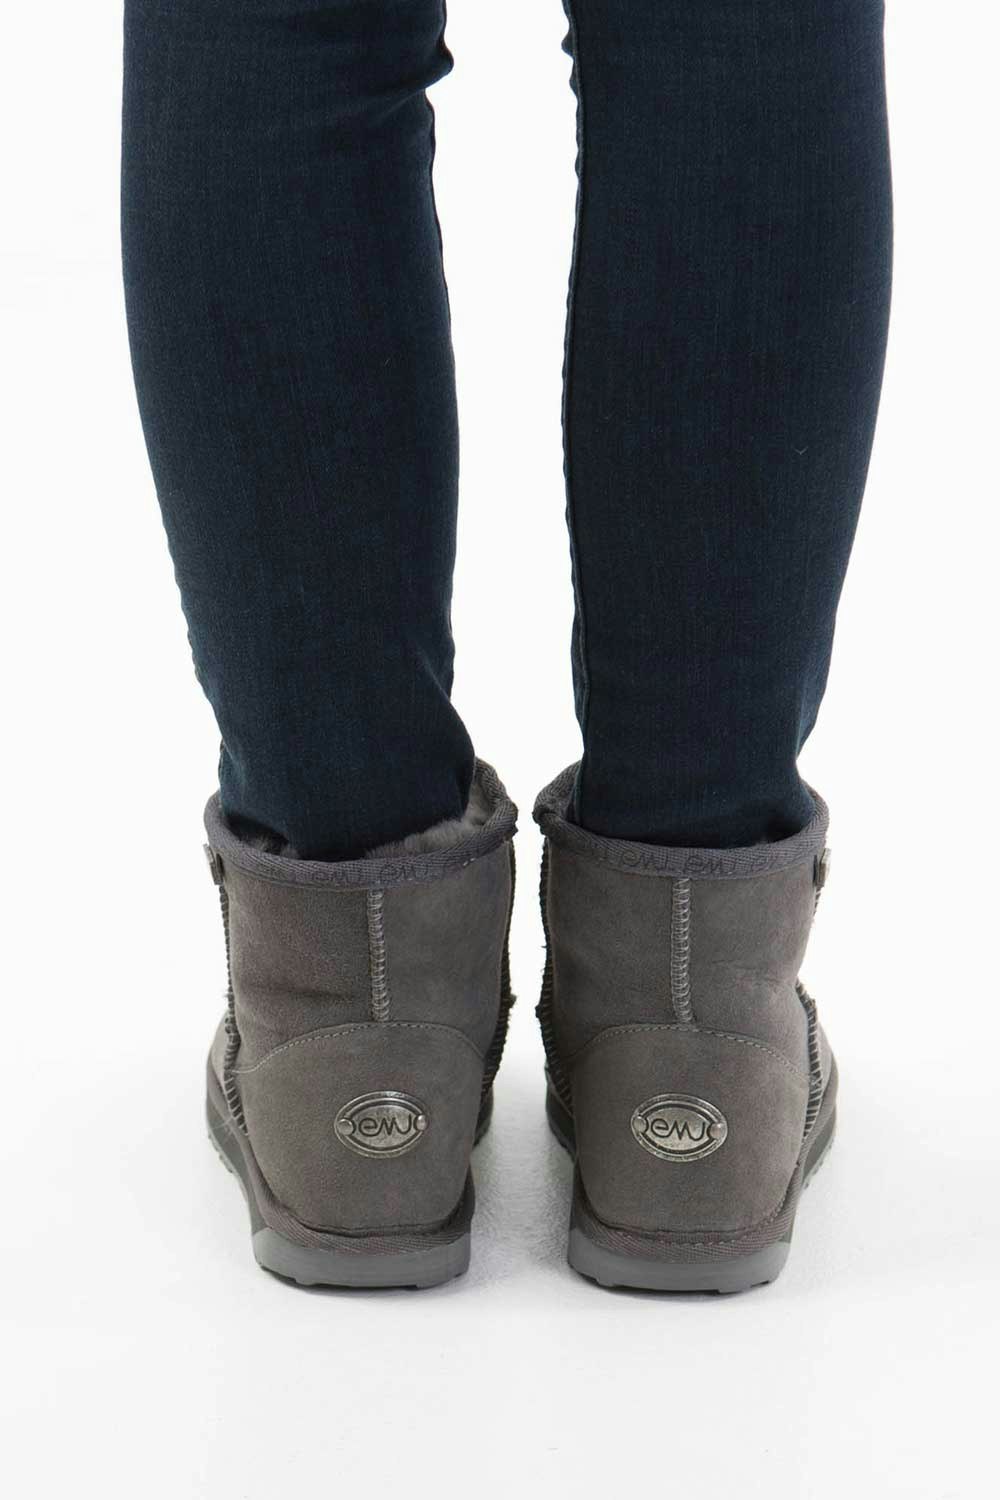 Emu Australia Platinum Stinger Mini Ugg Boots - Womens Boots